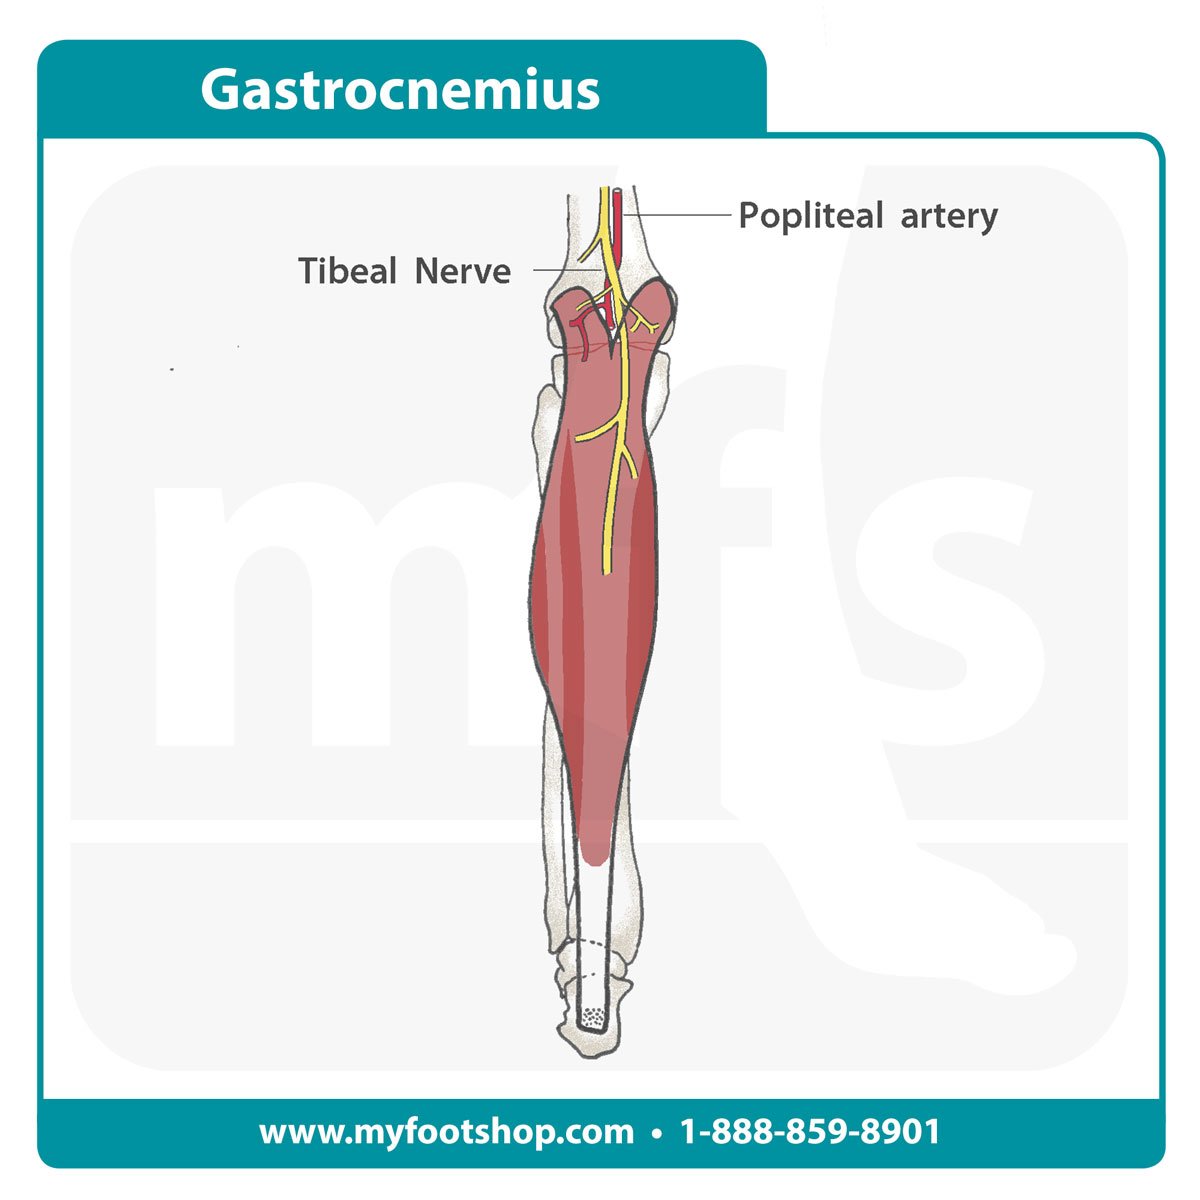 Gastrocnemius